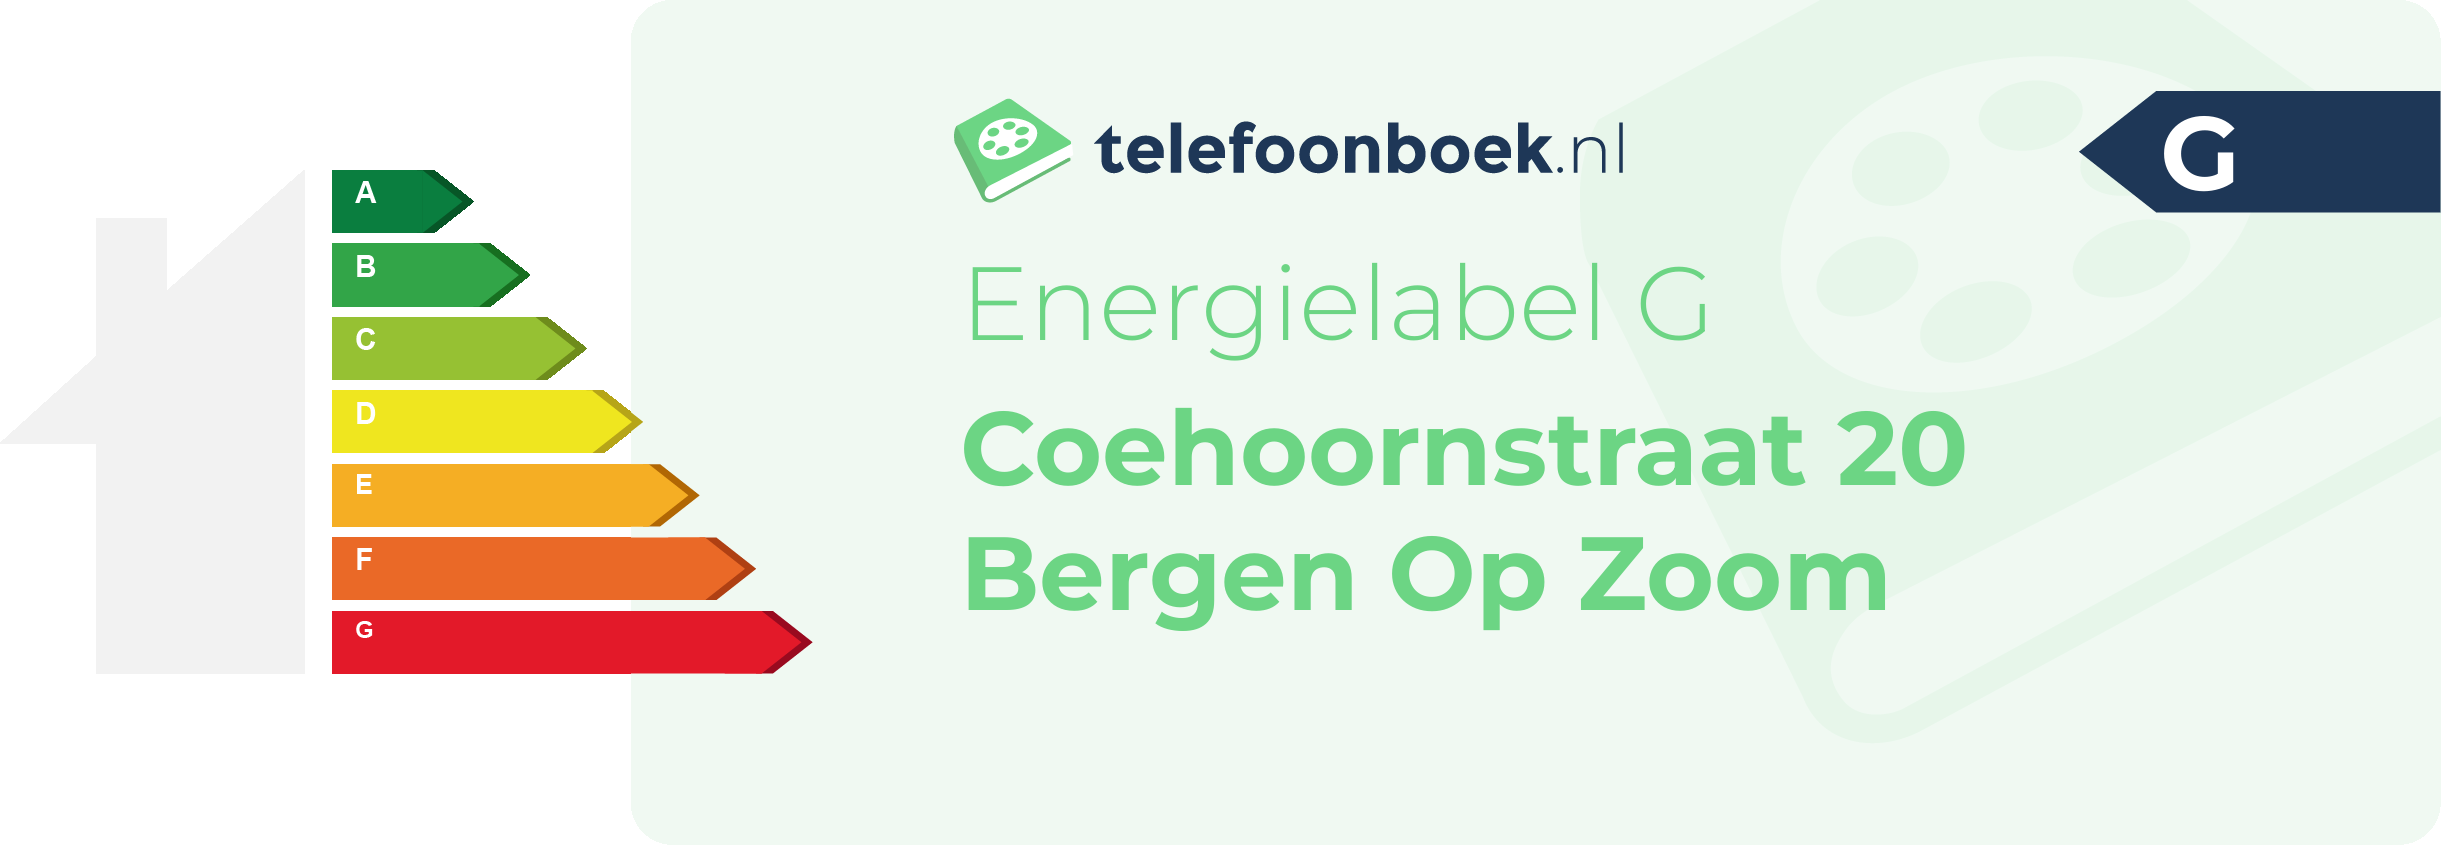 Energielabel Coehoornstraat 20 Bergen Op Zoom